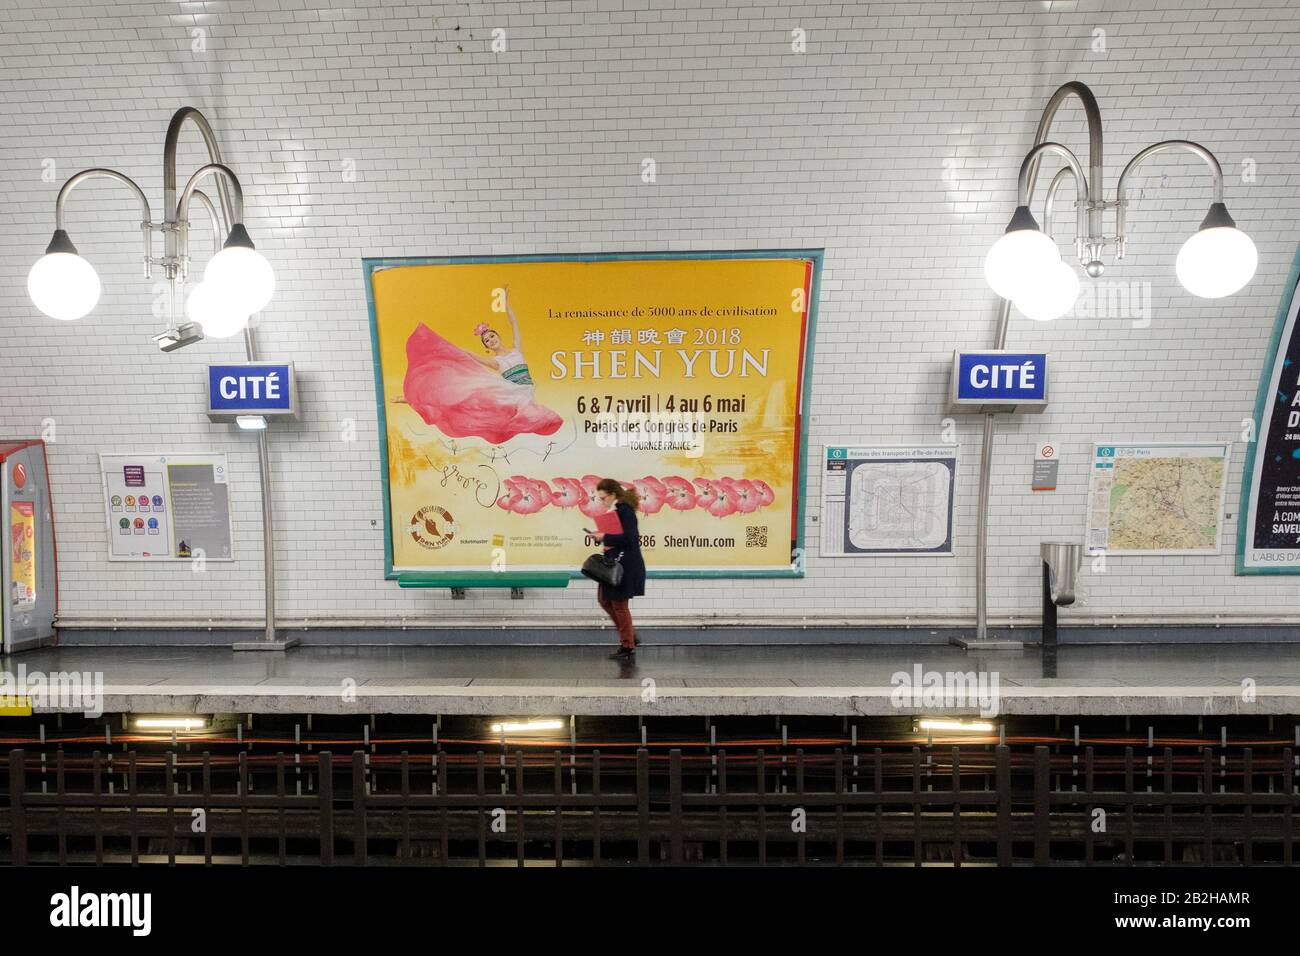 Metro de Paris - Cité station Stock Photo